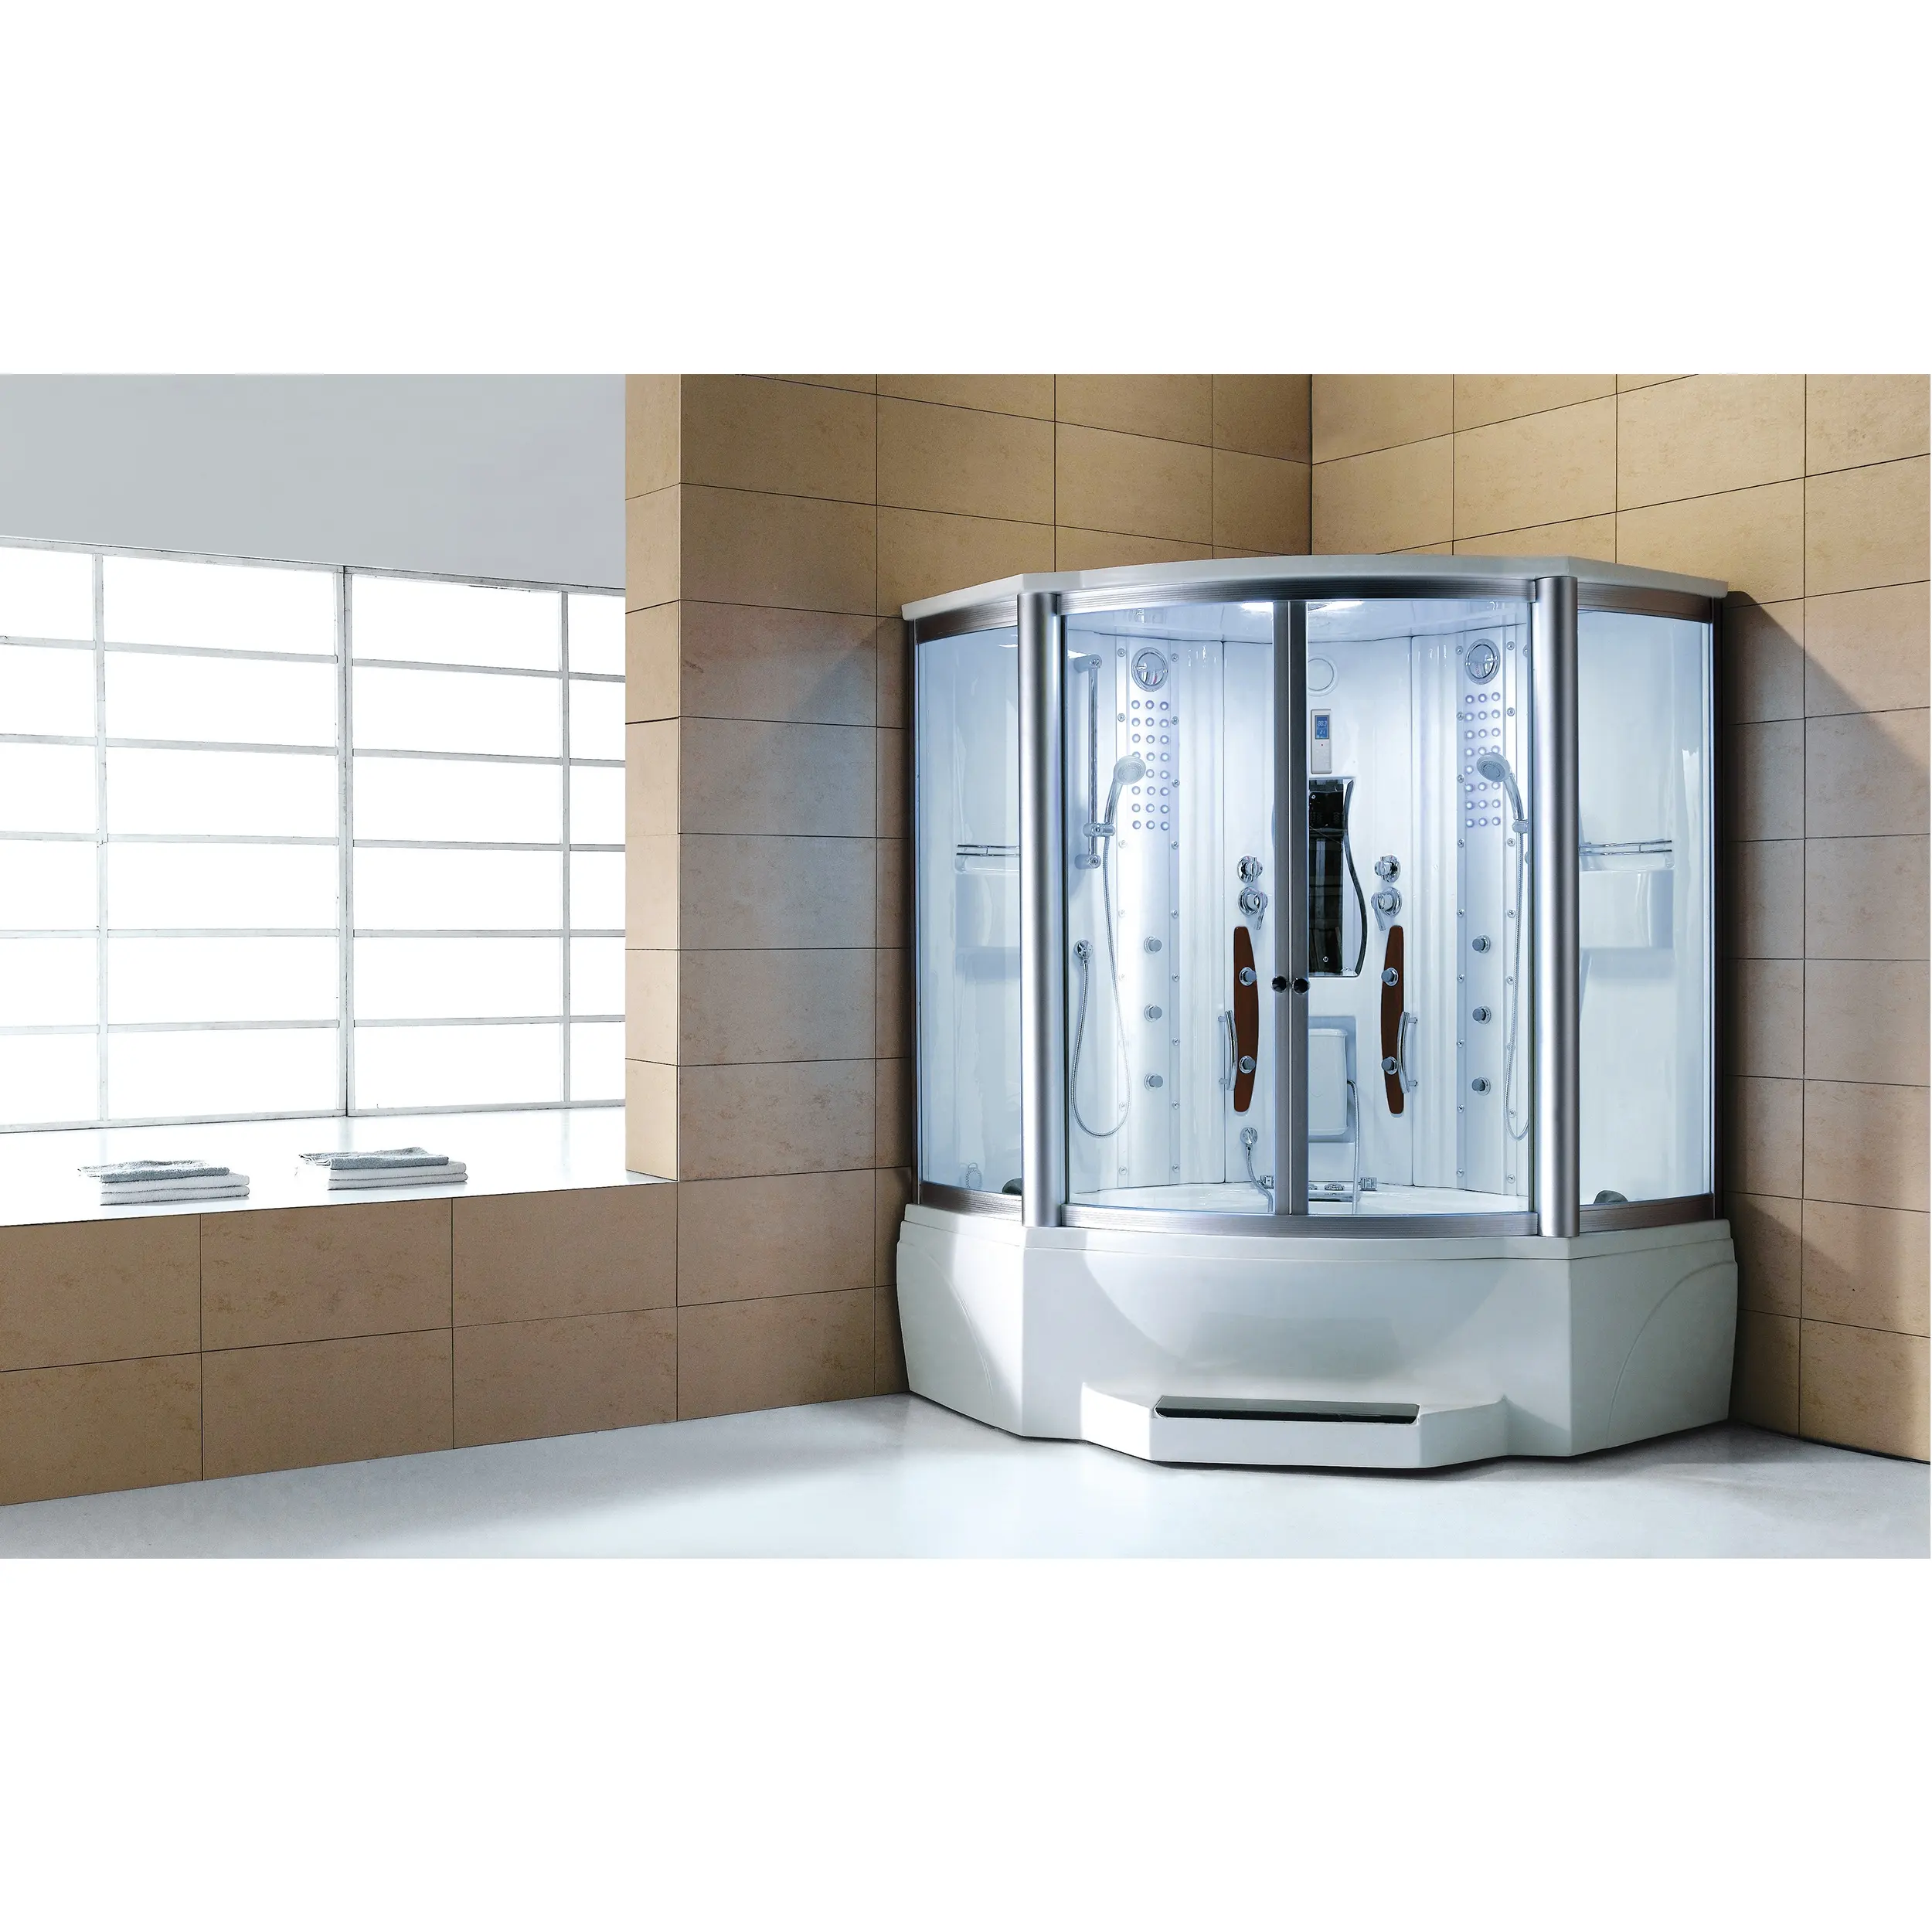 الحديثة نمط البخار دش الغرفة؛ الفاخرة مصممة غرفة البخار. البخار و القدم غرفة استحمام وتدليك غرفة الحديثة دش WS-608A